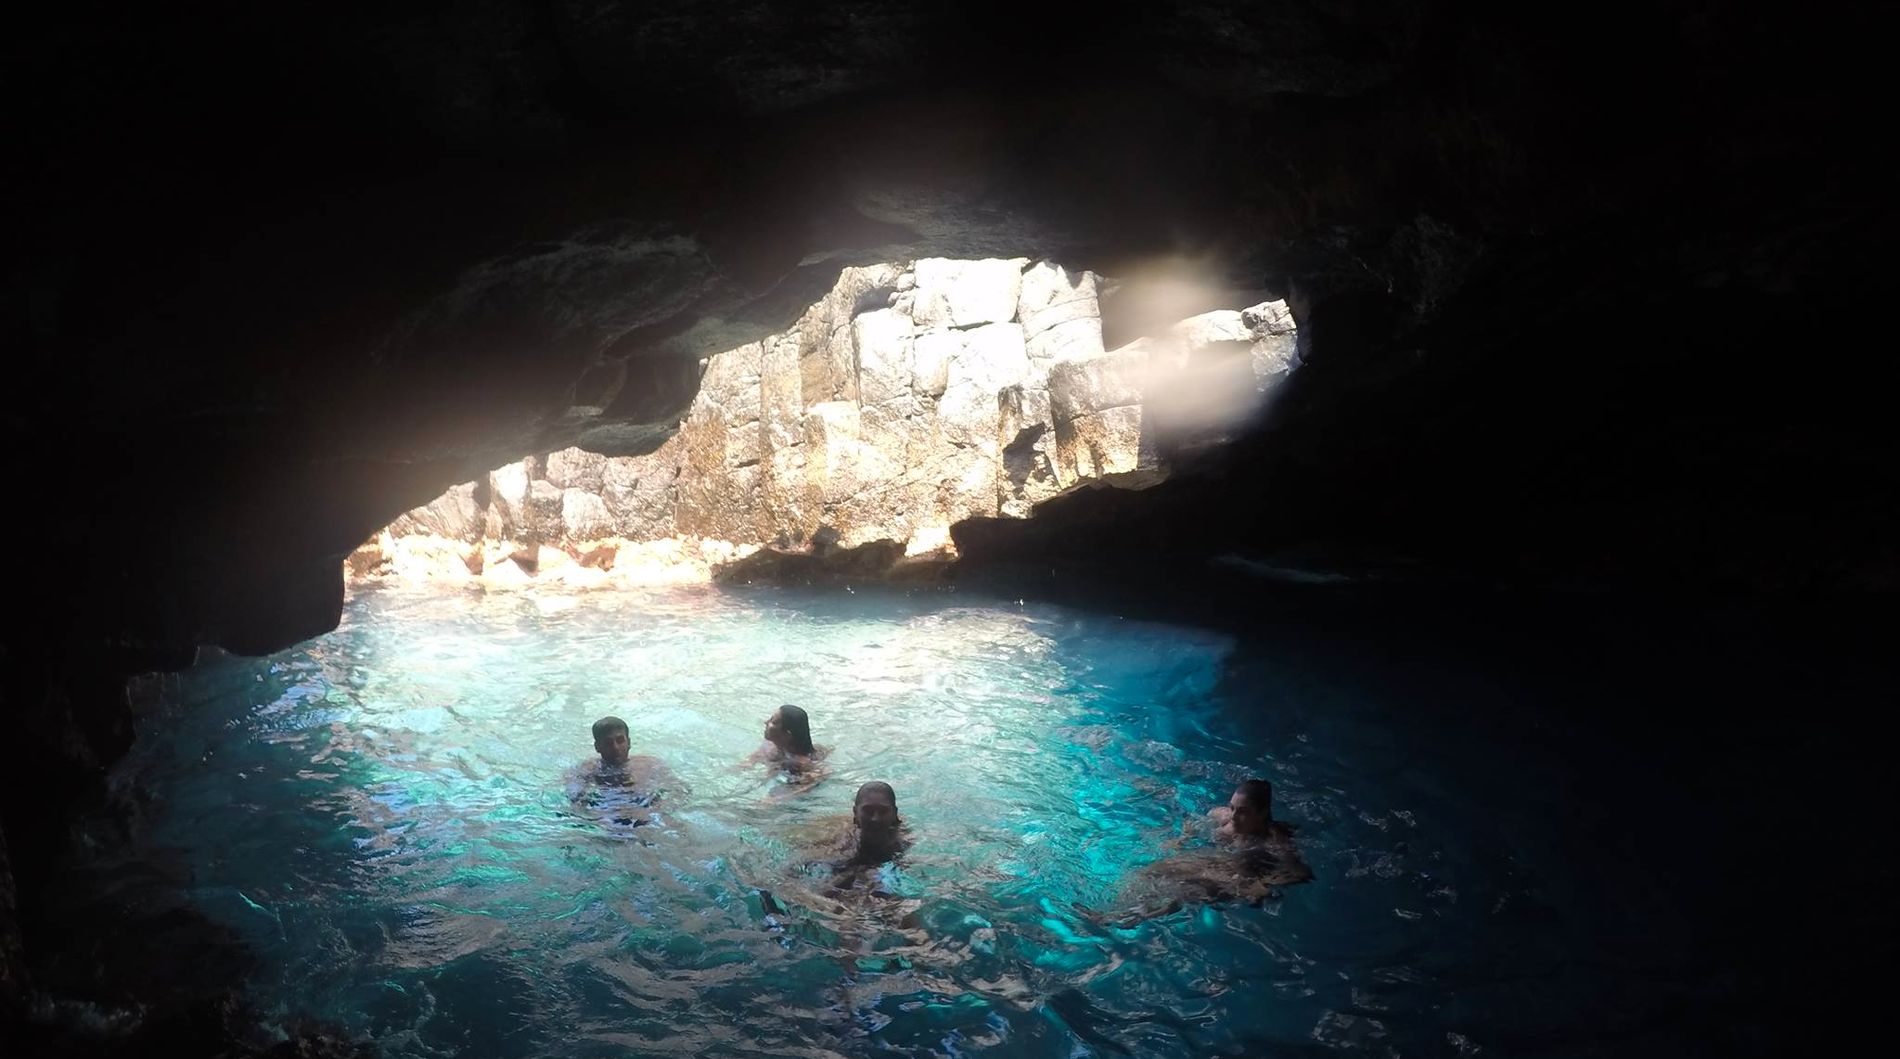 GROTTEUTFLUKT: De høye klippene i Los Gigantes sørger for en flott og dramatisk innramming, og du kan dra på oppdagelsesferd i grotter som denne. 